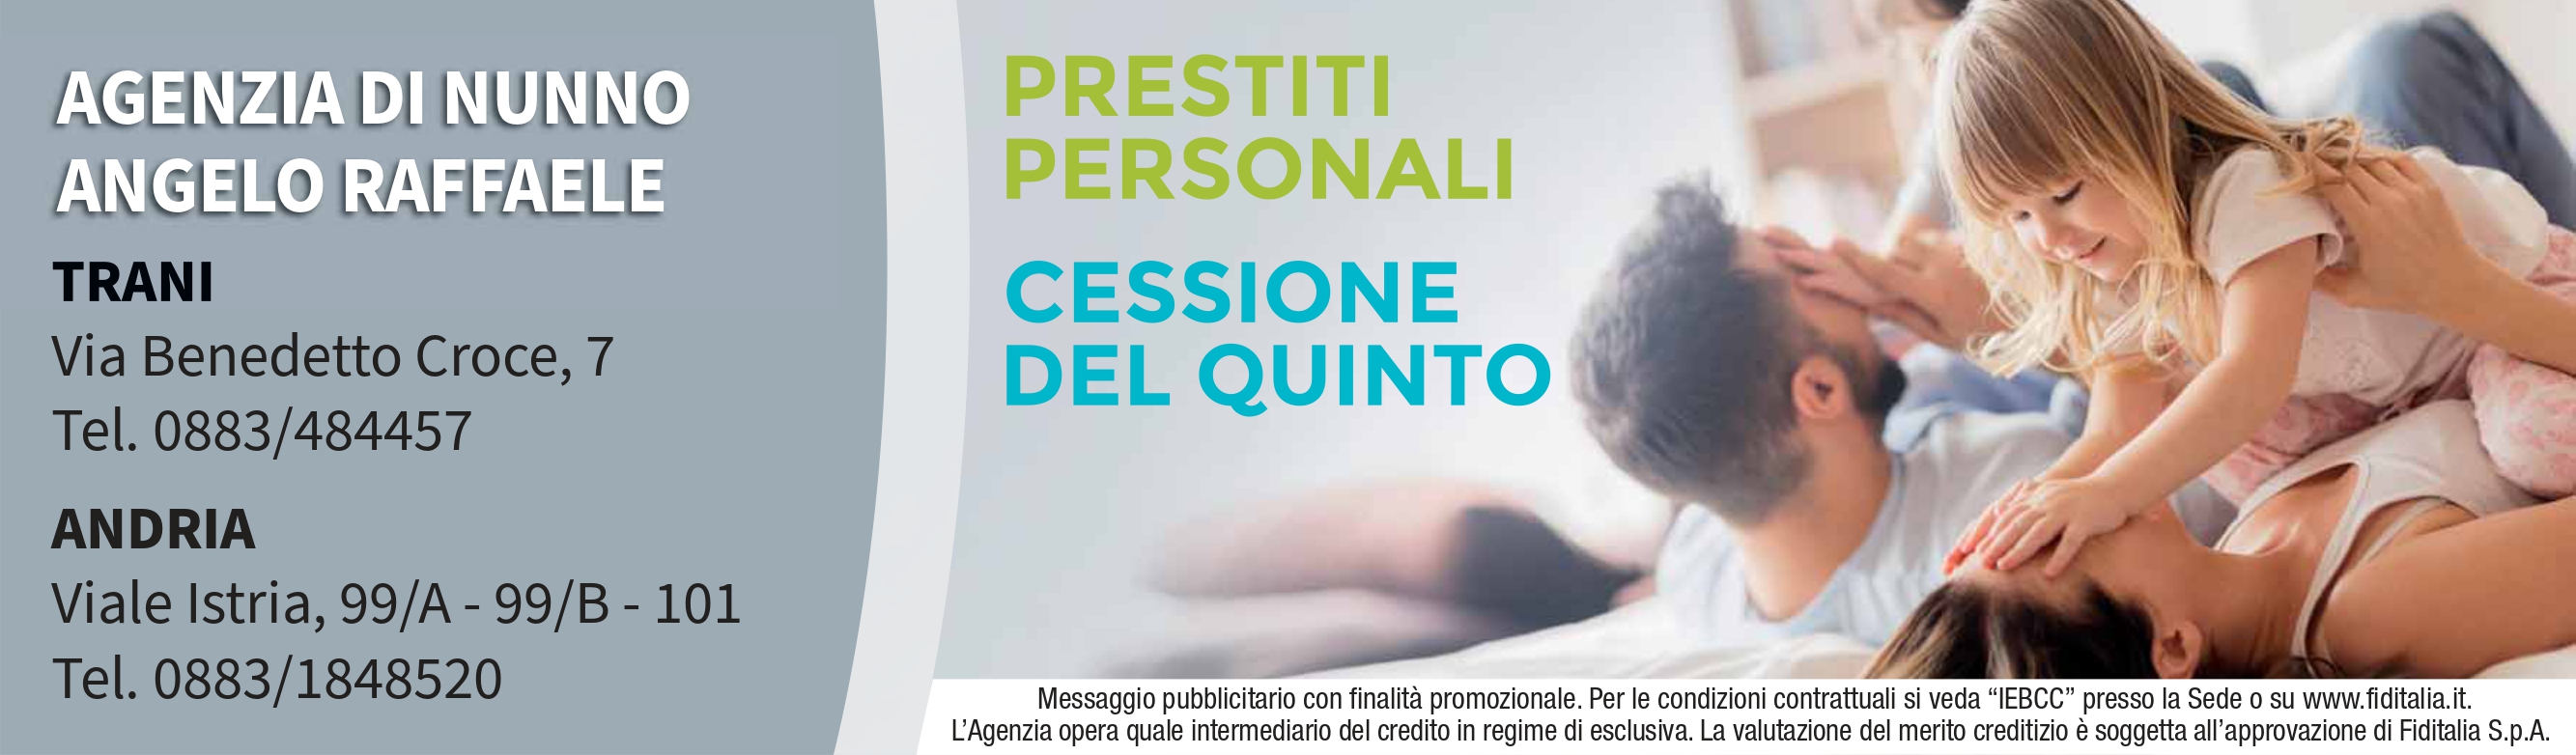 Contatti Agenzia Di Nunno Angelo Raffaele filiali Fiditalia - Prestiti personali, Cessione del quinto